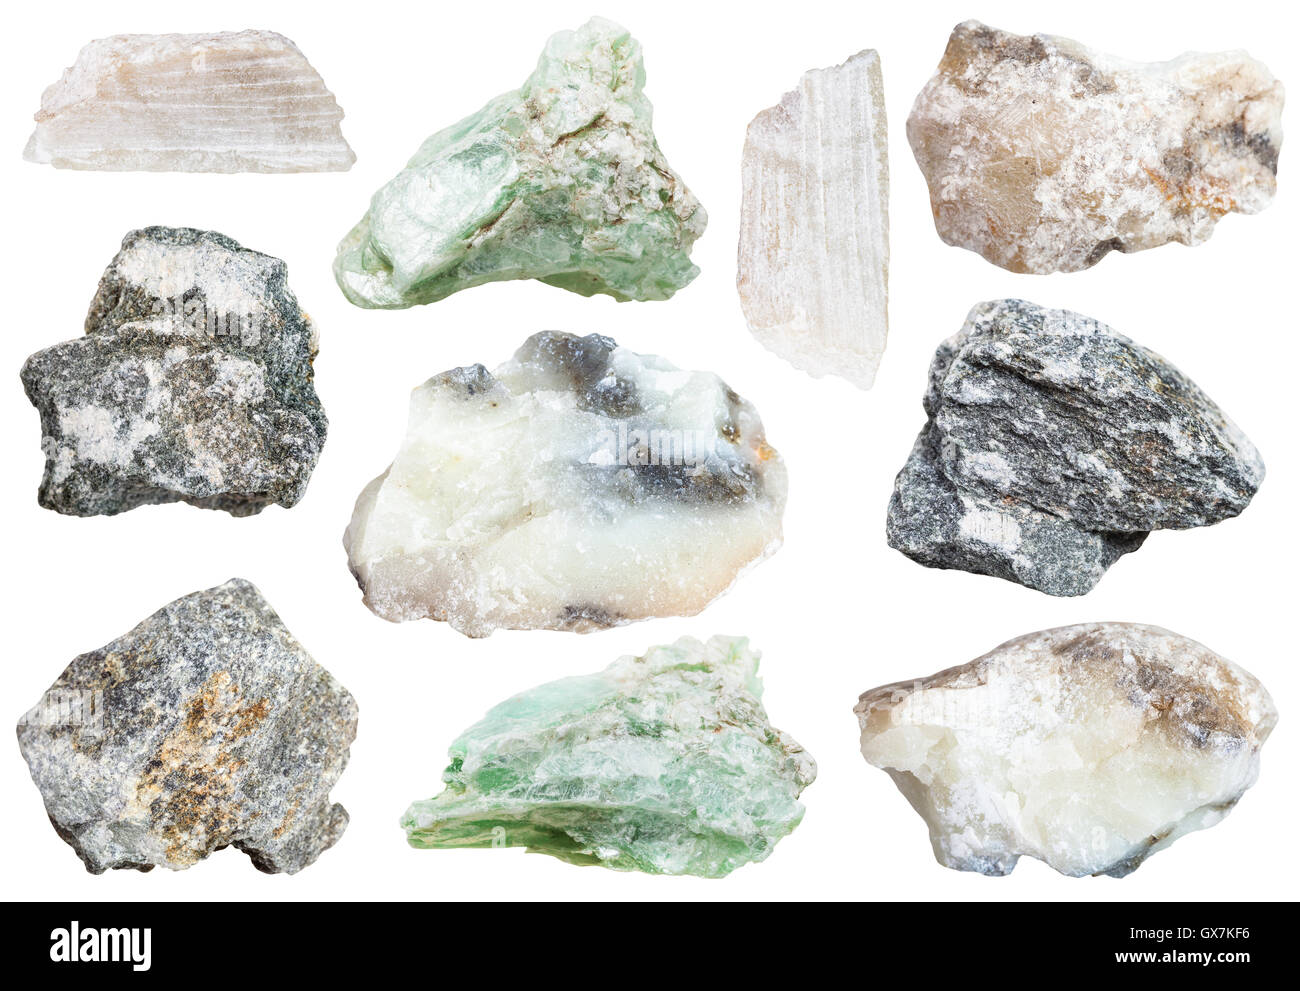 Sammlung von Proben von Talkum und Speckstein (Steatit, Soaprock) Mineralien isoliert auf weißem Hintergrund Stockfoto